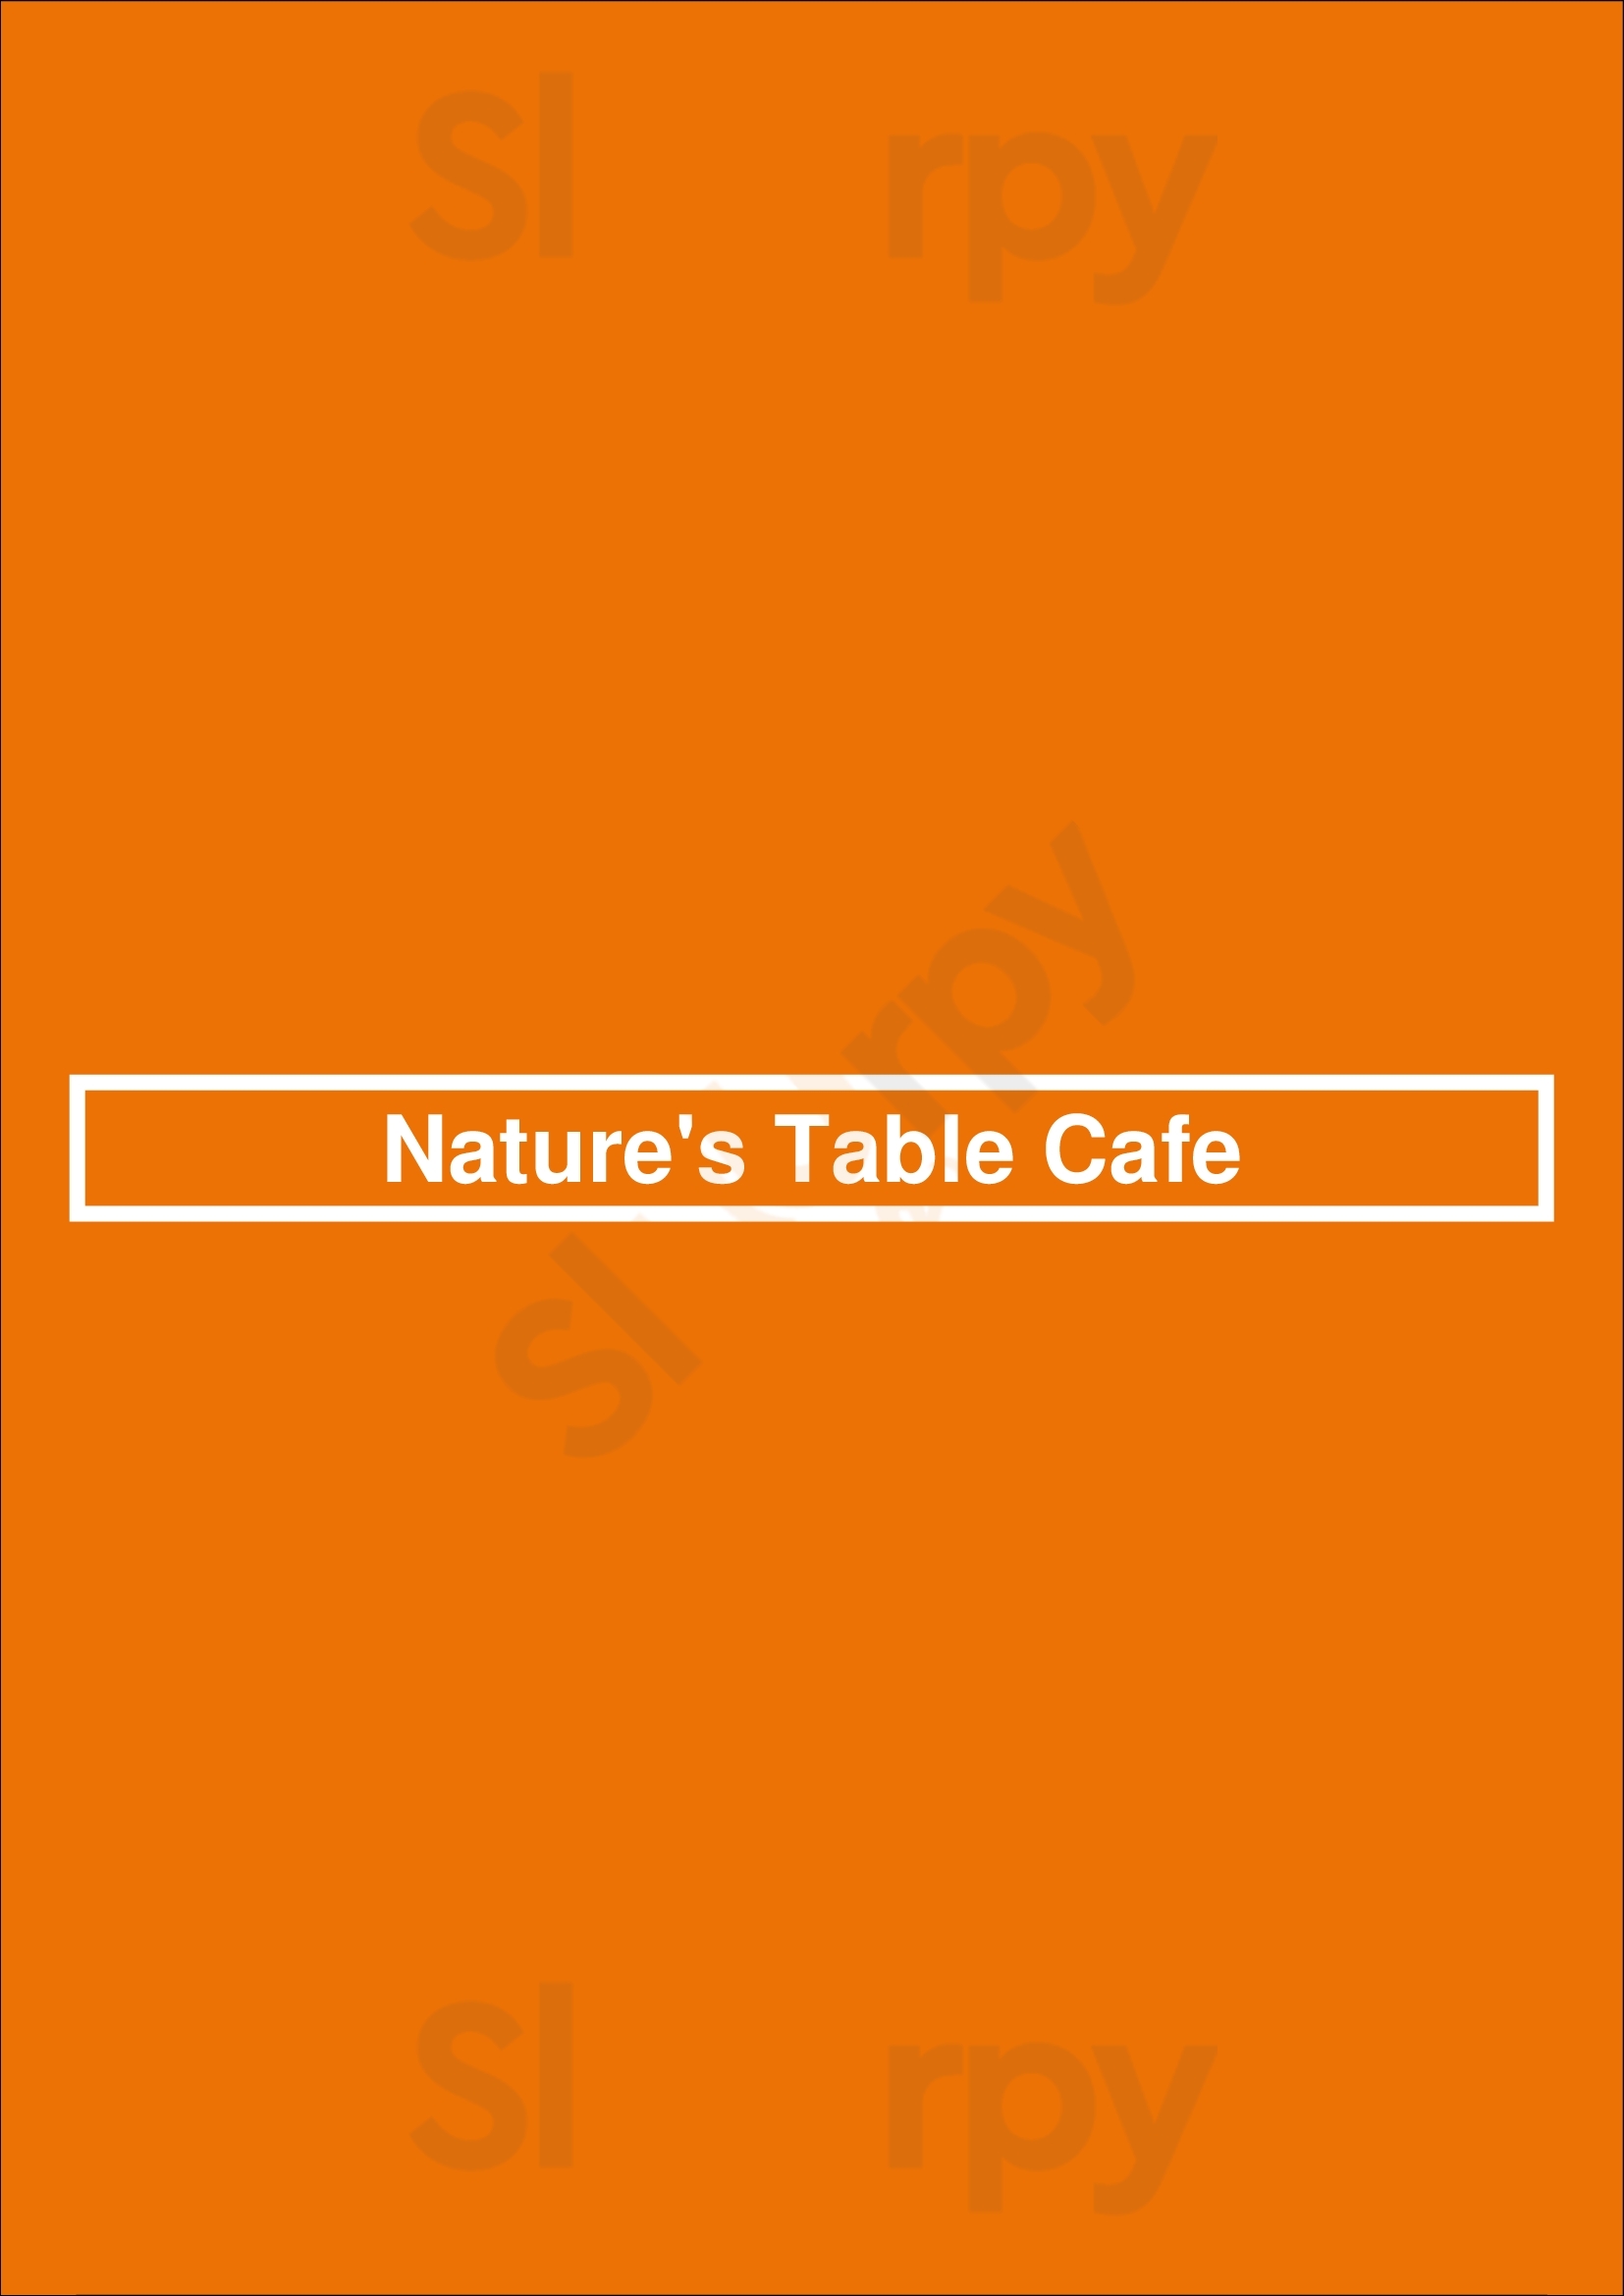 Nature's Table Cafe Orlando Menu - 1